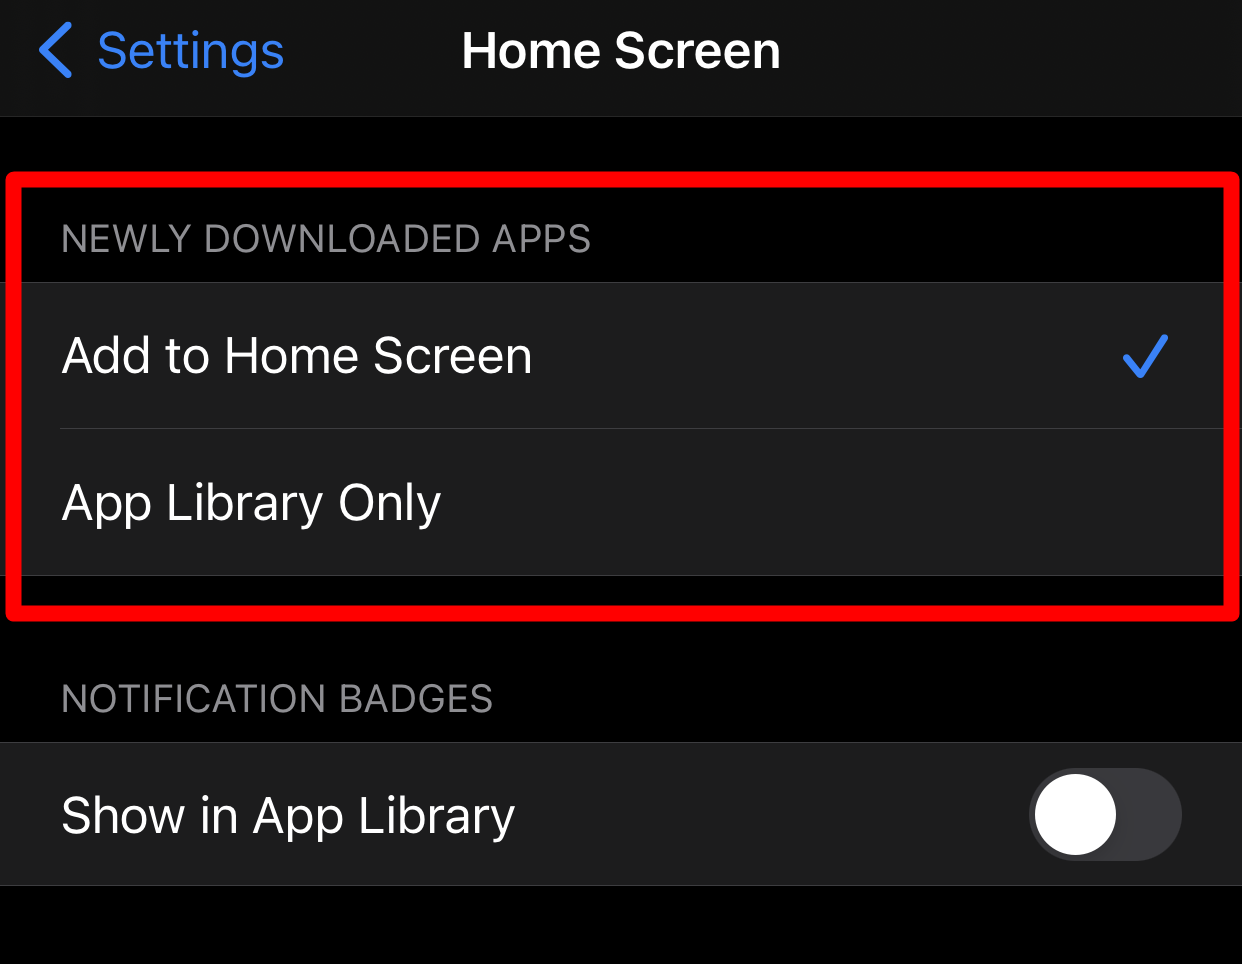 Tambah aplikasi ke Home Screen